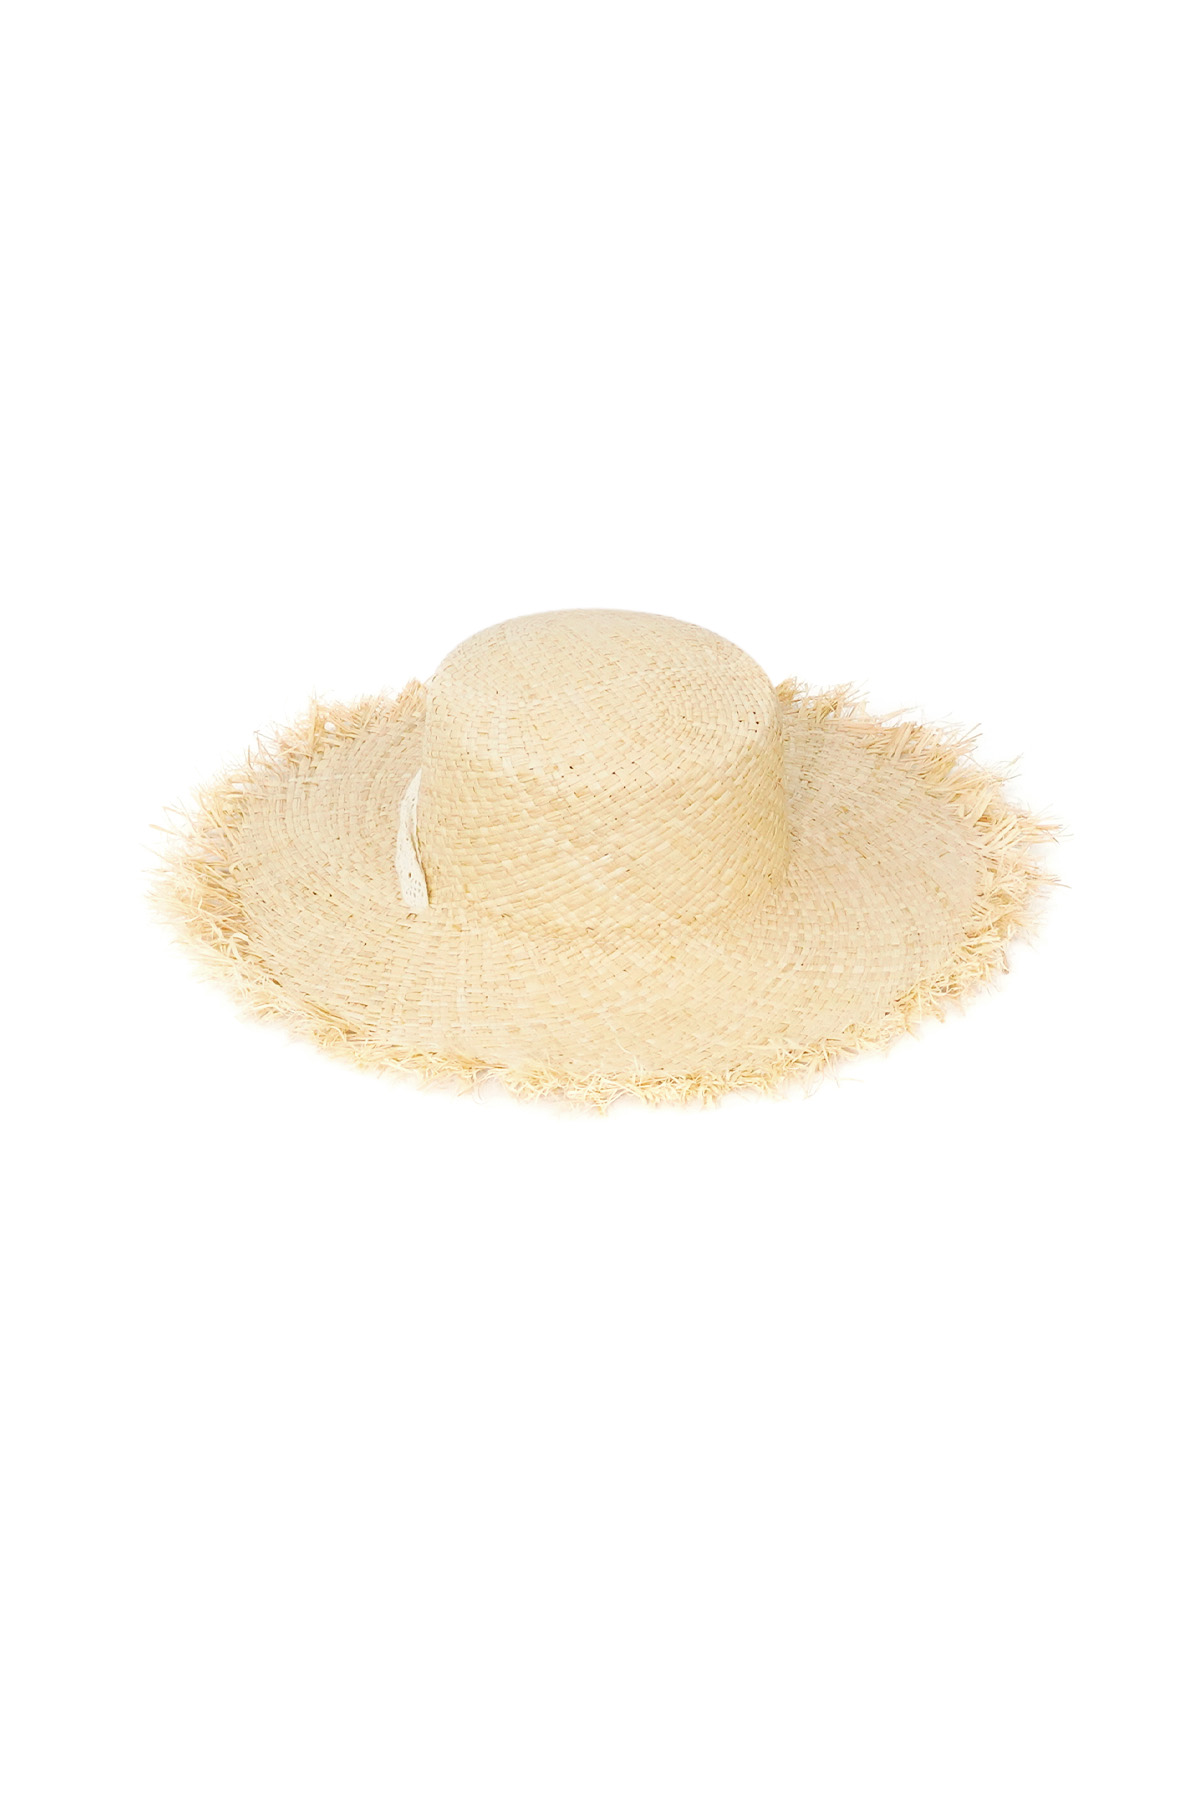 Plaj havası şapkası - kirli beyaz h5 Resim5